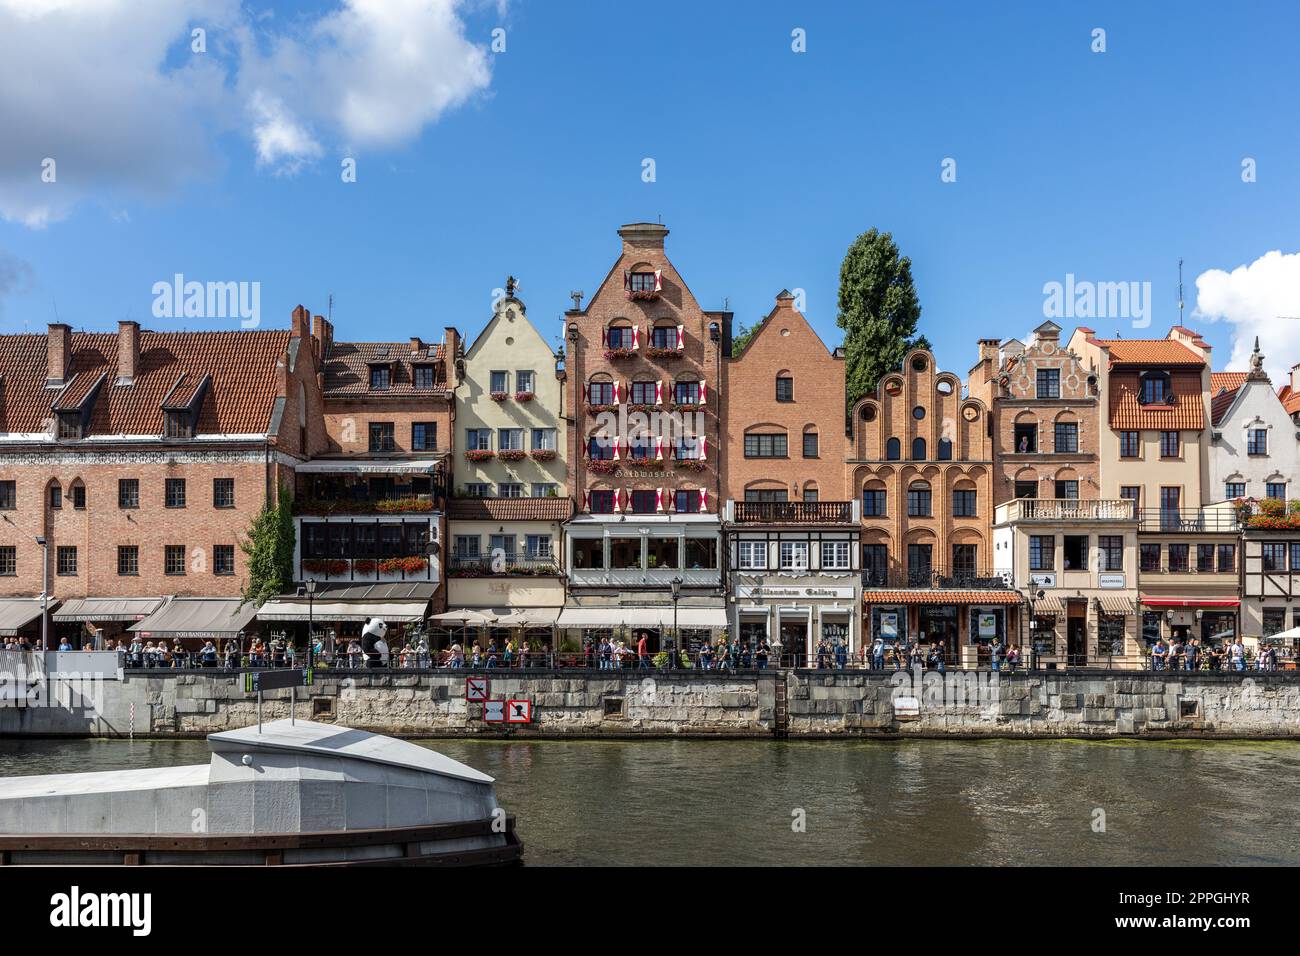 Gdansk, vieille ville - bâtiments historiques sur les rives de la Motlawa, Pologne Banque D'Images